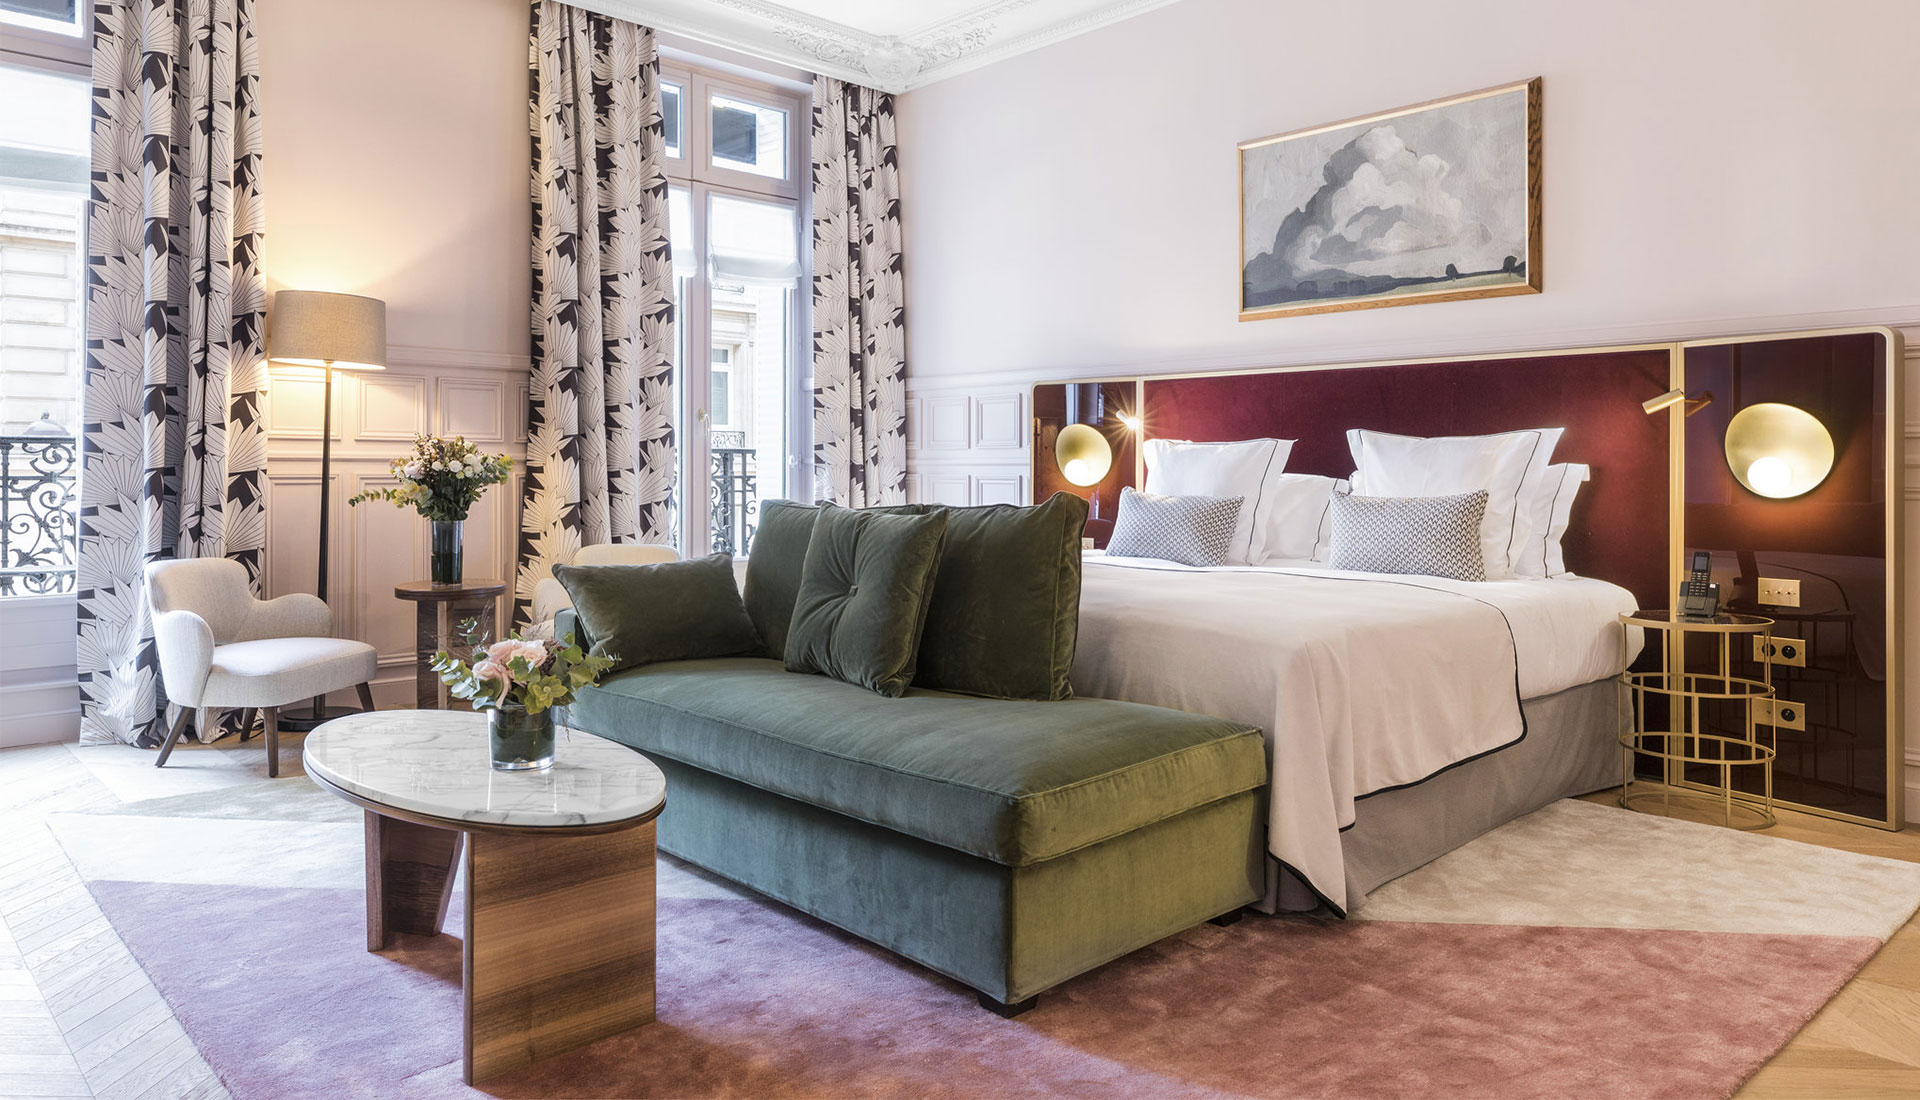 Бутик-отель Grand Powers: новые перспективы парижских гостиниц